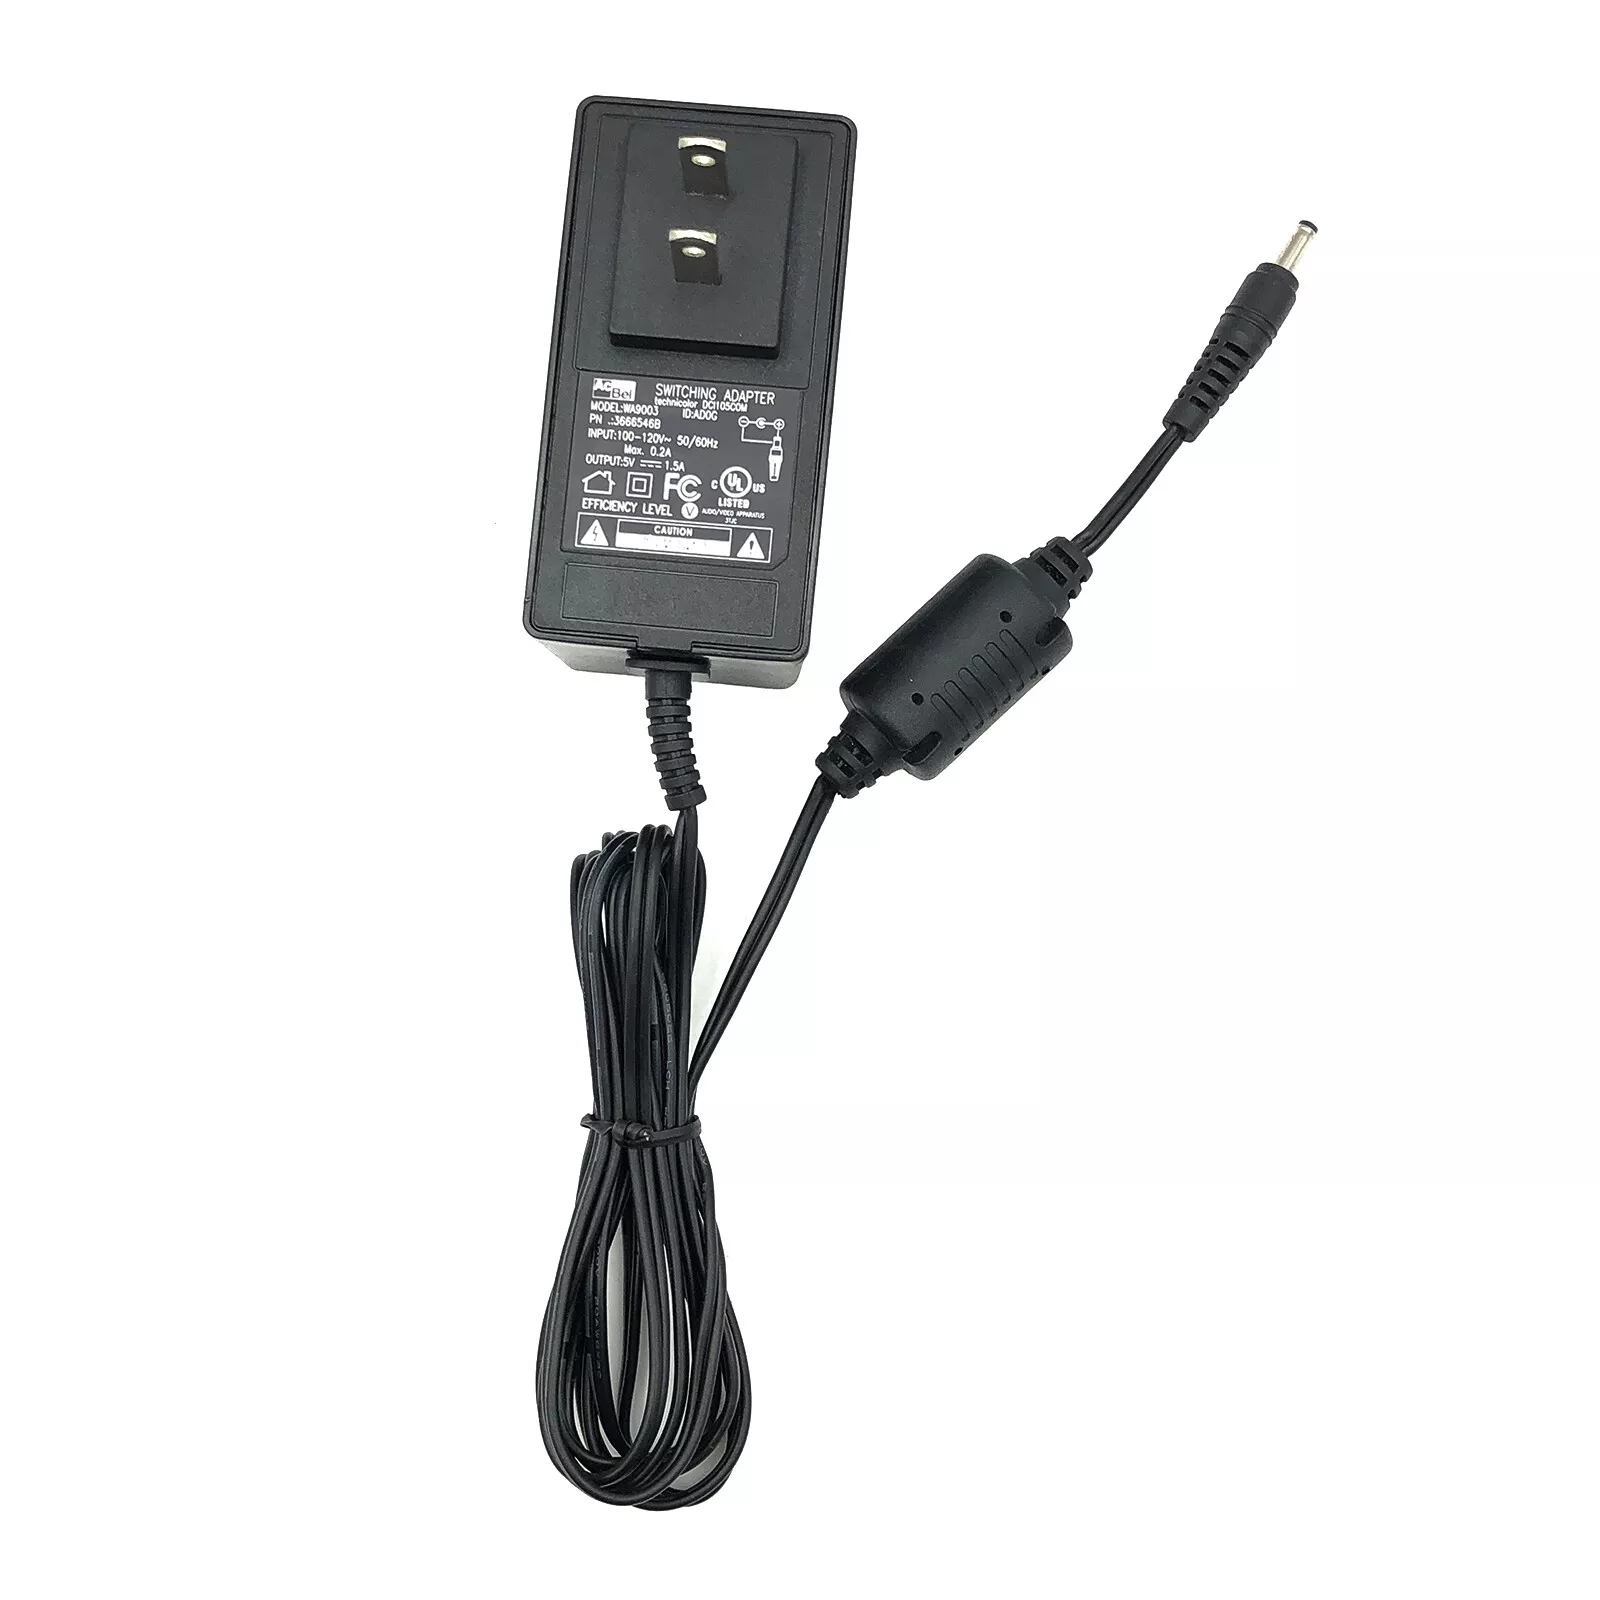 *Brand NEW*Genuine Acbel 5V 1.5 A AC Adapter WA9003 for Xfinity Comcast DCI105COM Power Supply